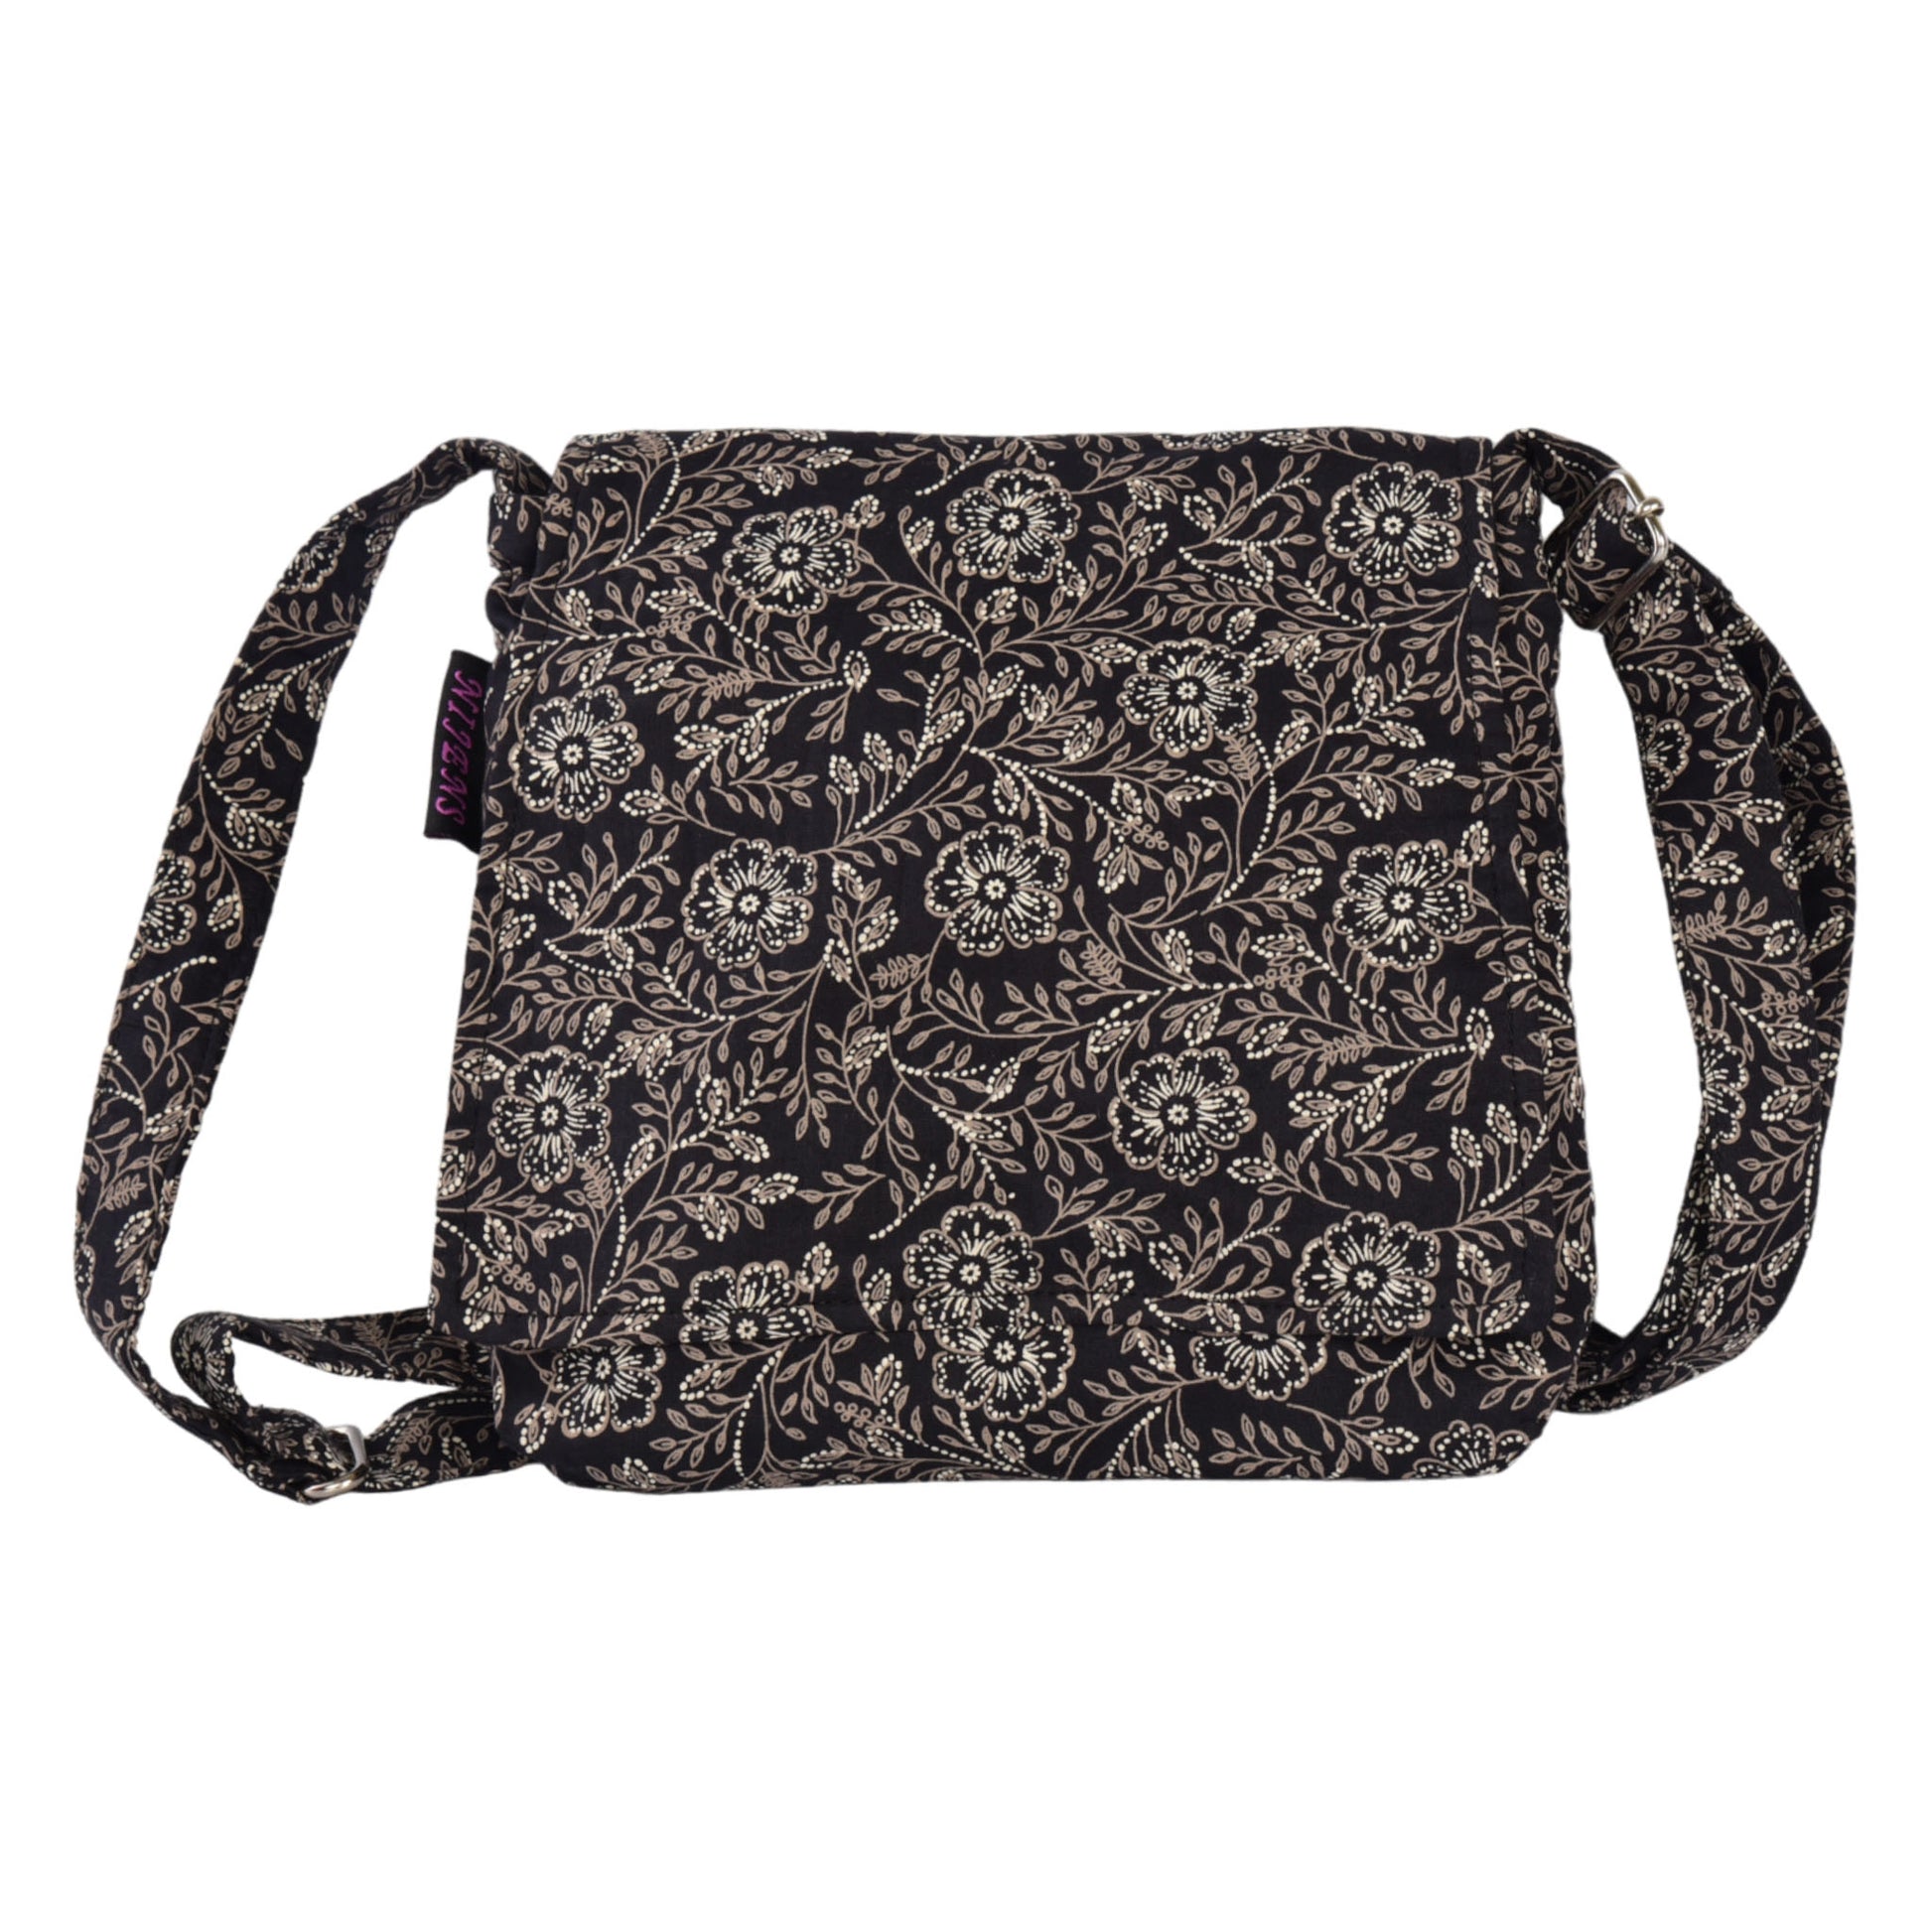 Kleine Tasche, Umhängetasche aus Baumwolle, Schwarz mit Blumenornamenten.